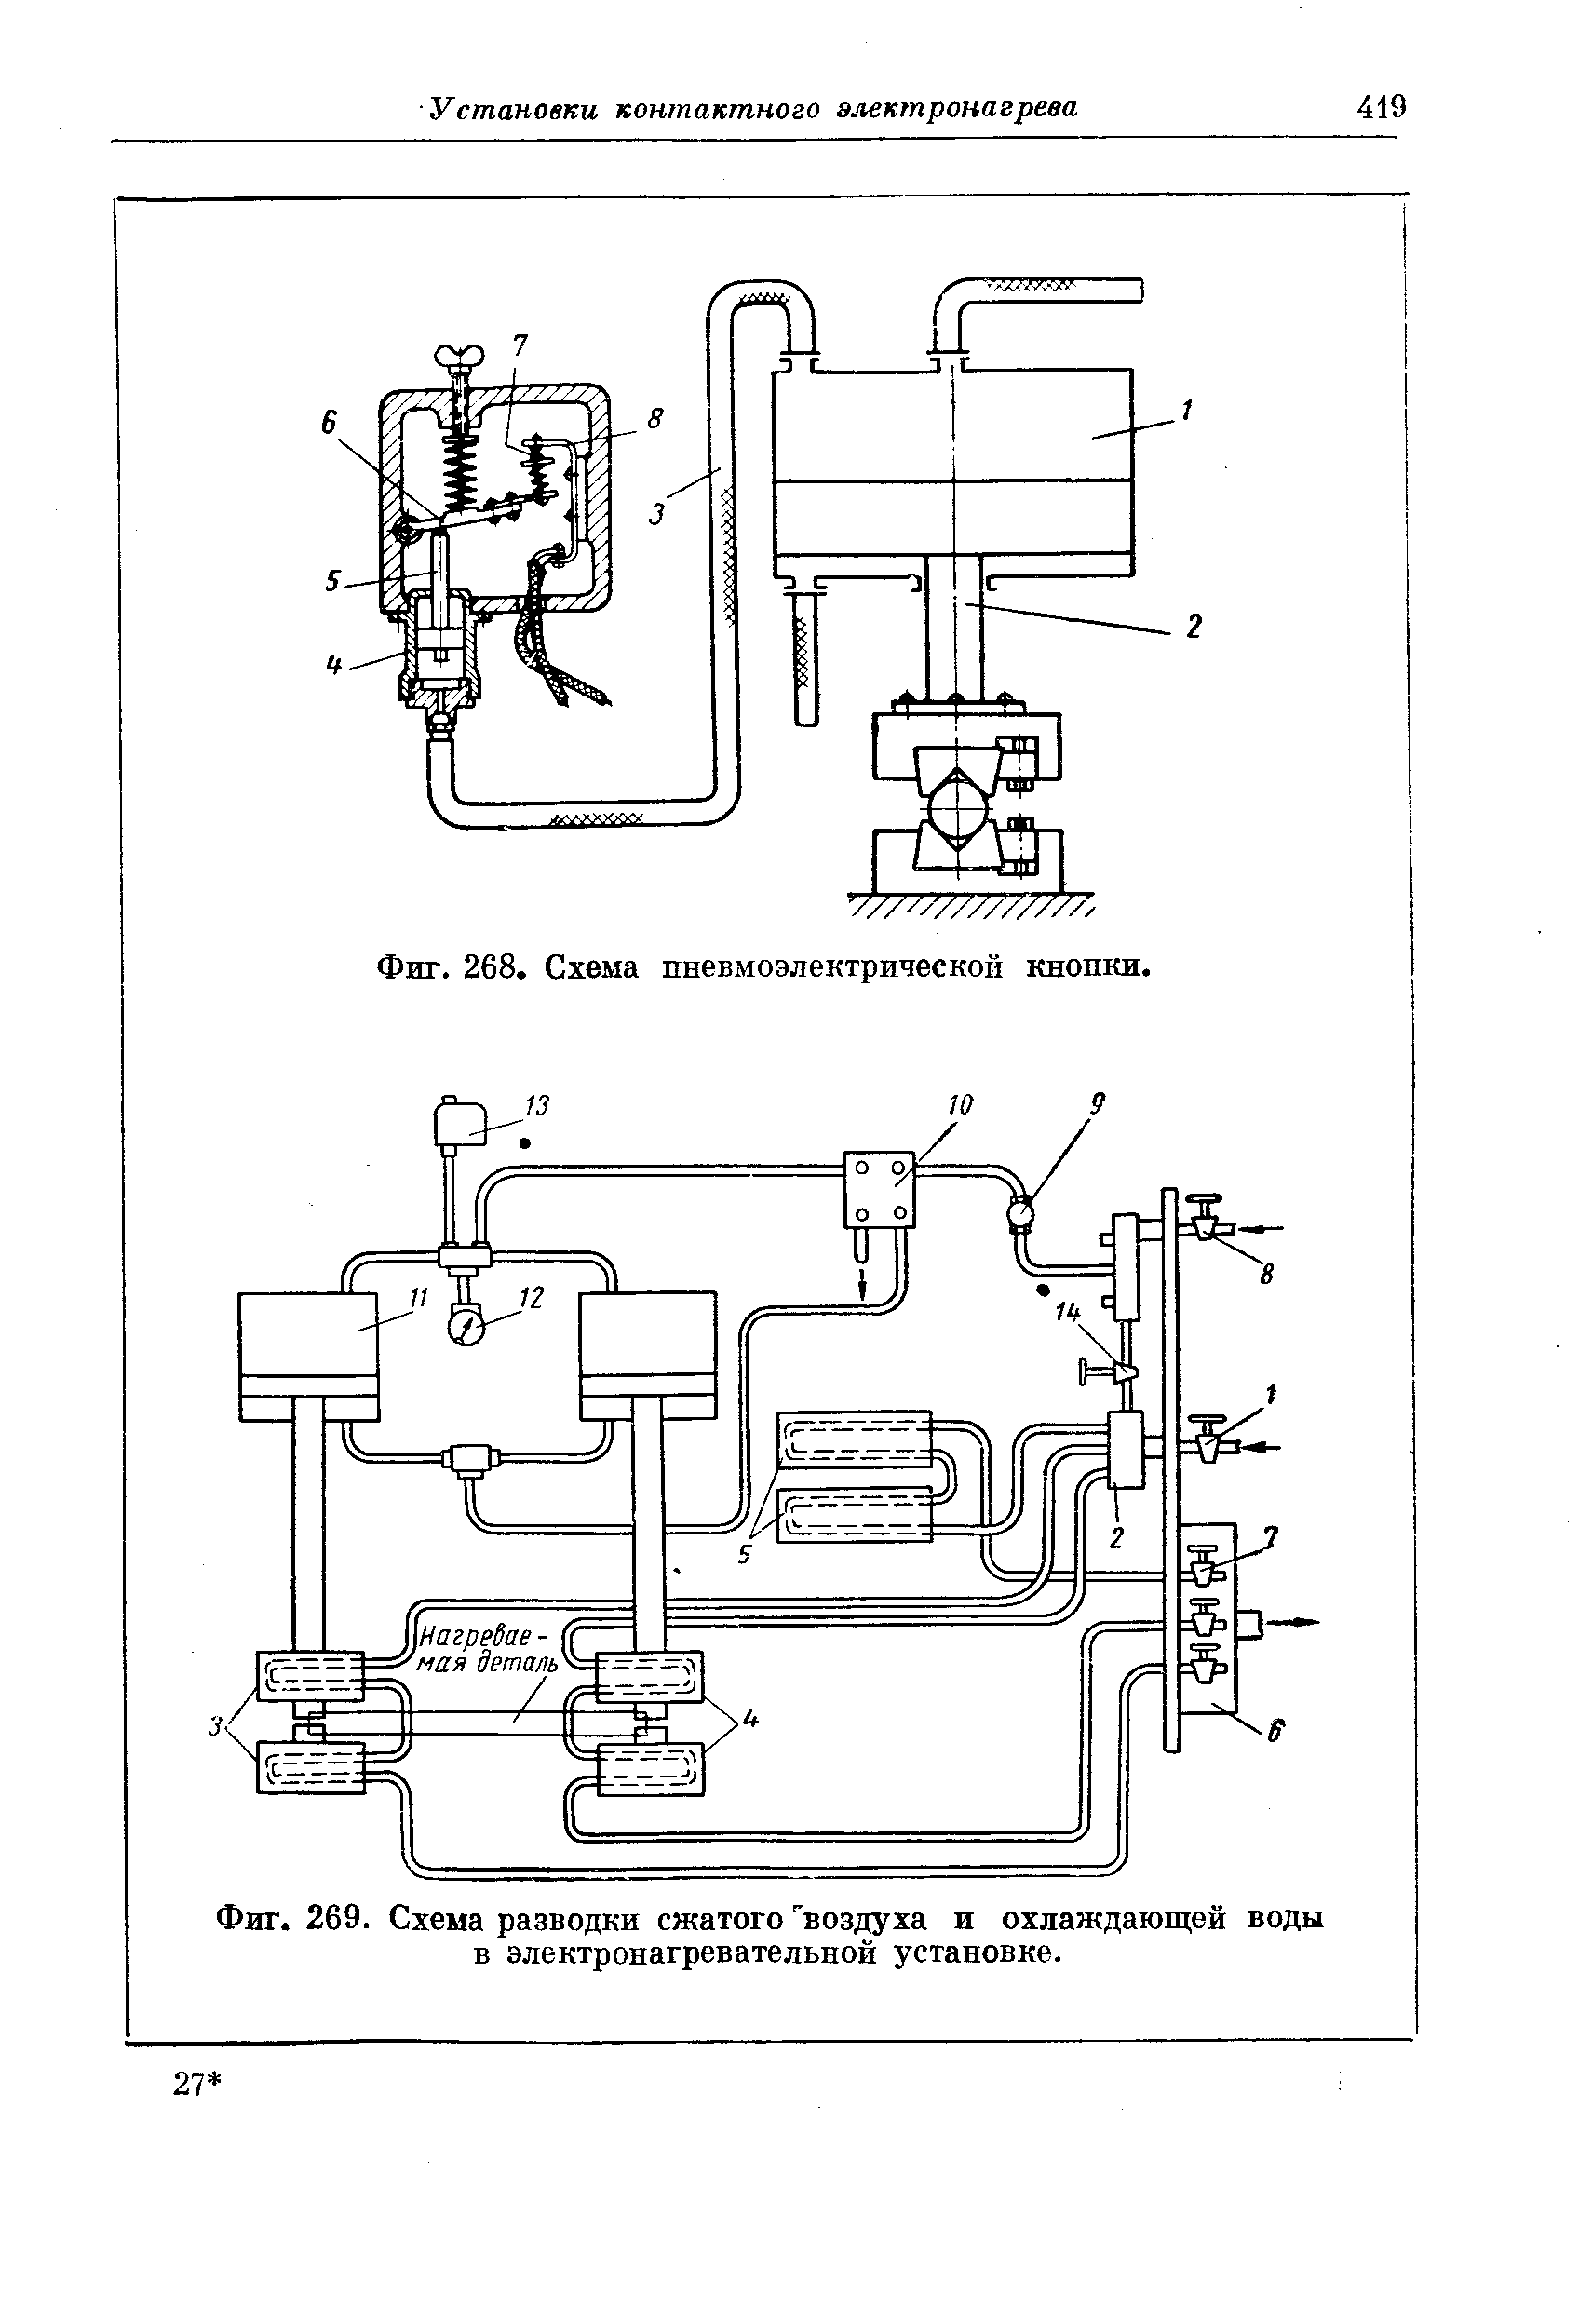 Фиг. 269. Схема разводки сжатого "воздуха и охлаждающей воды в электронагревательной установке.
